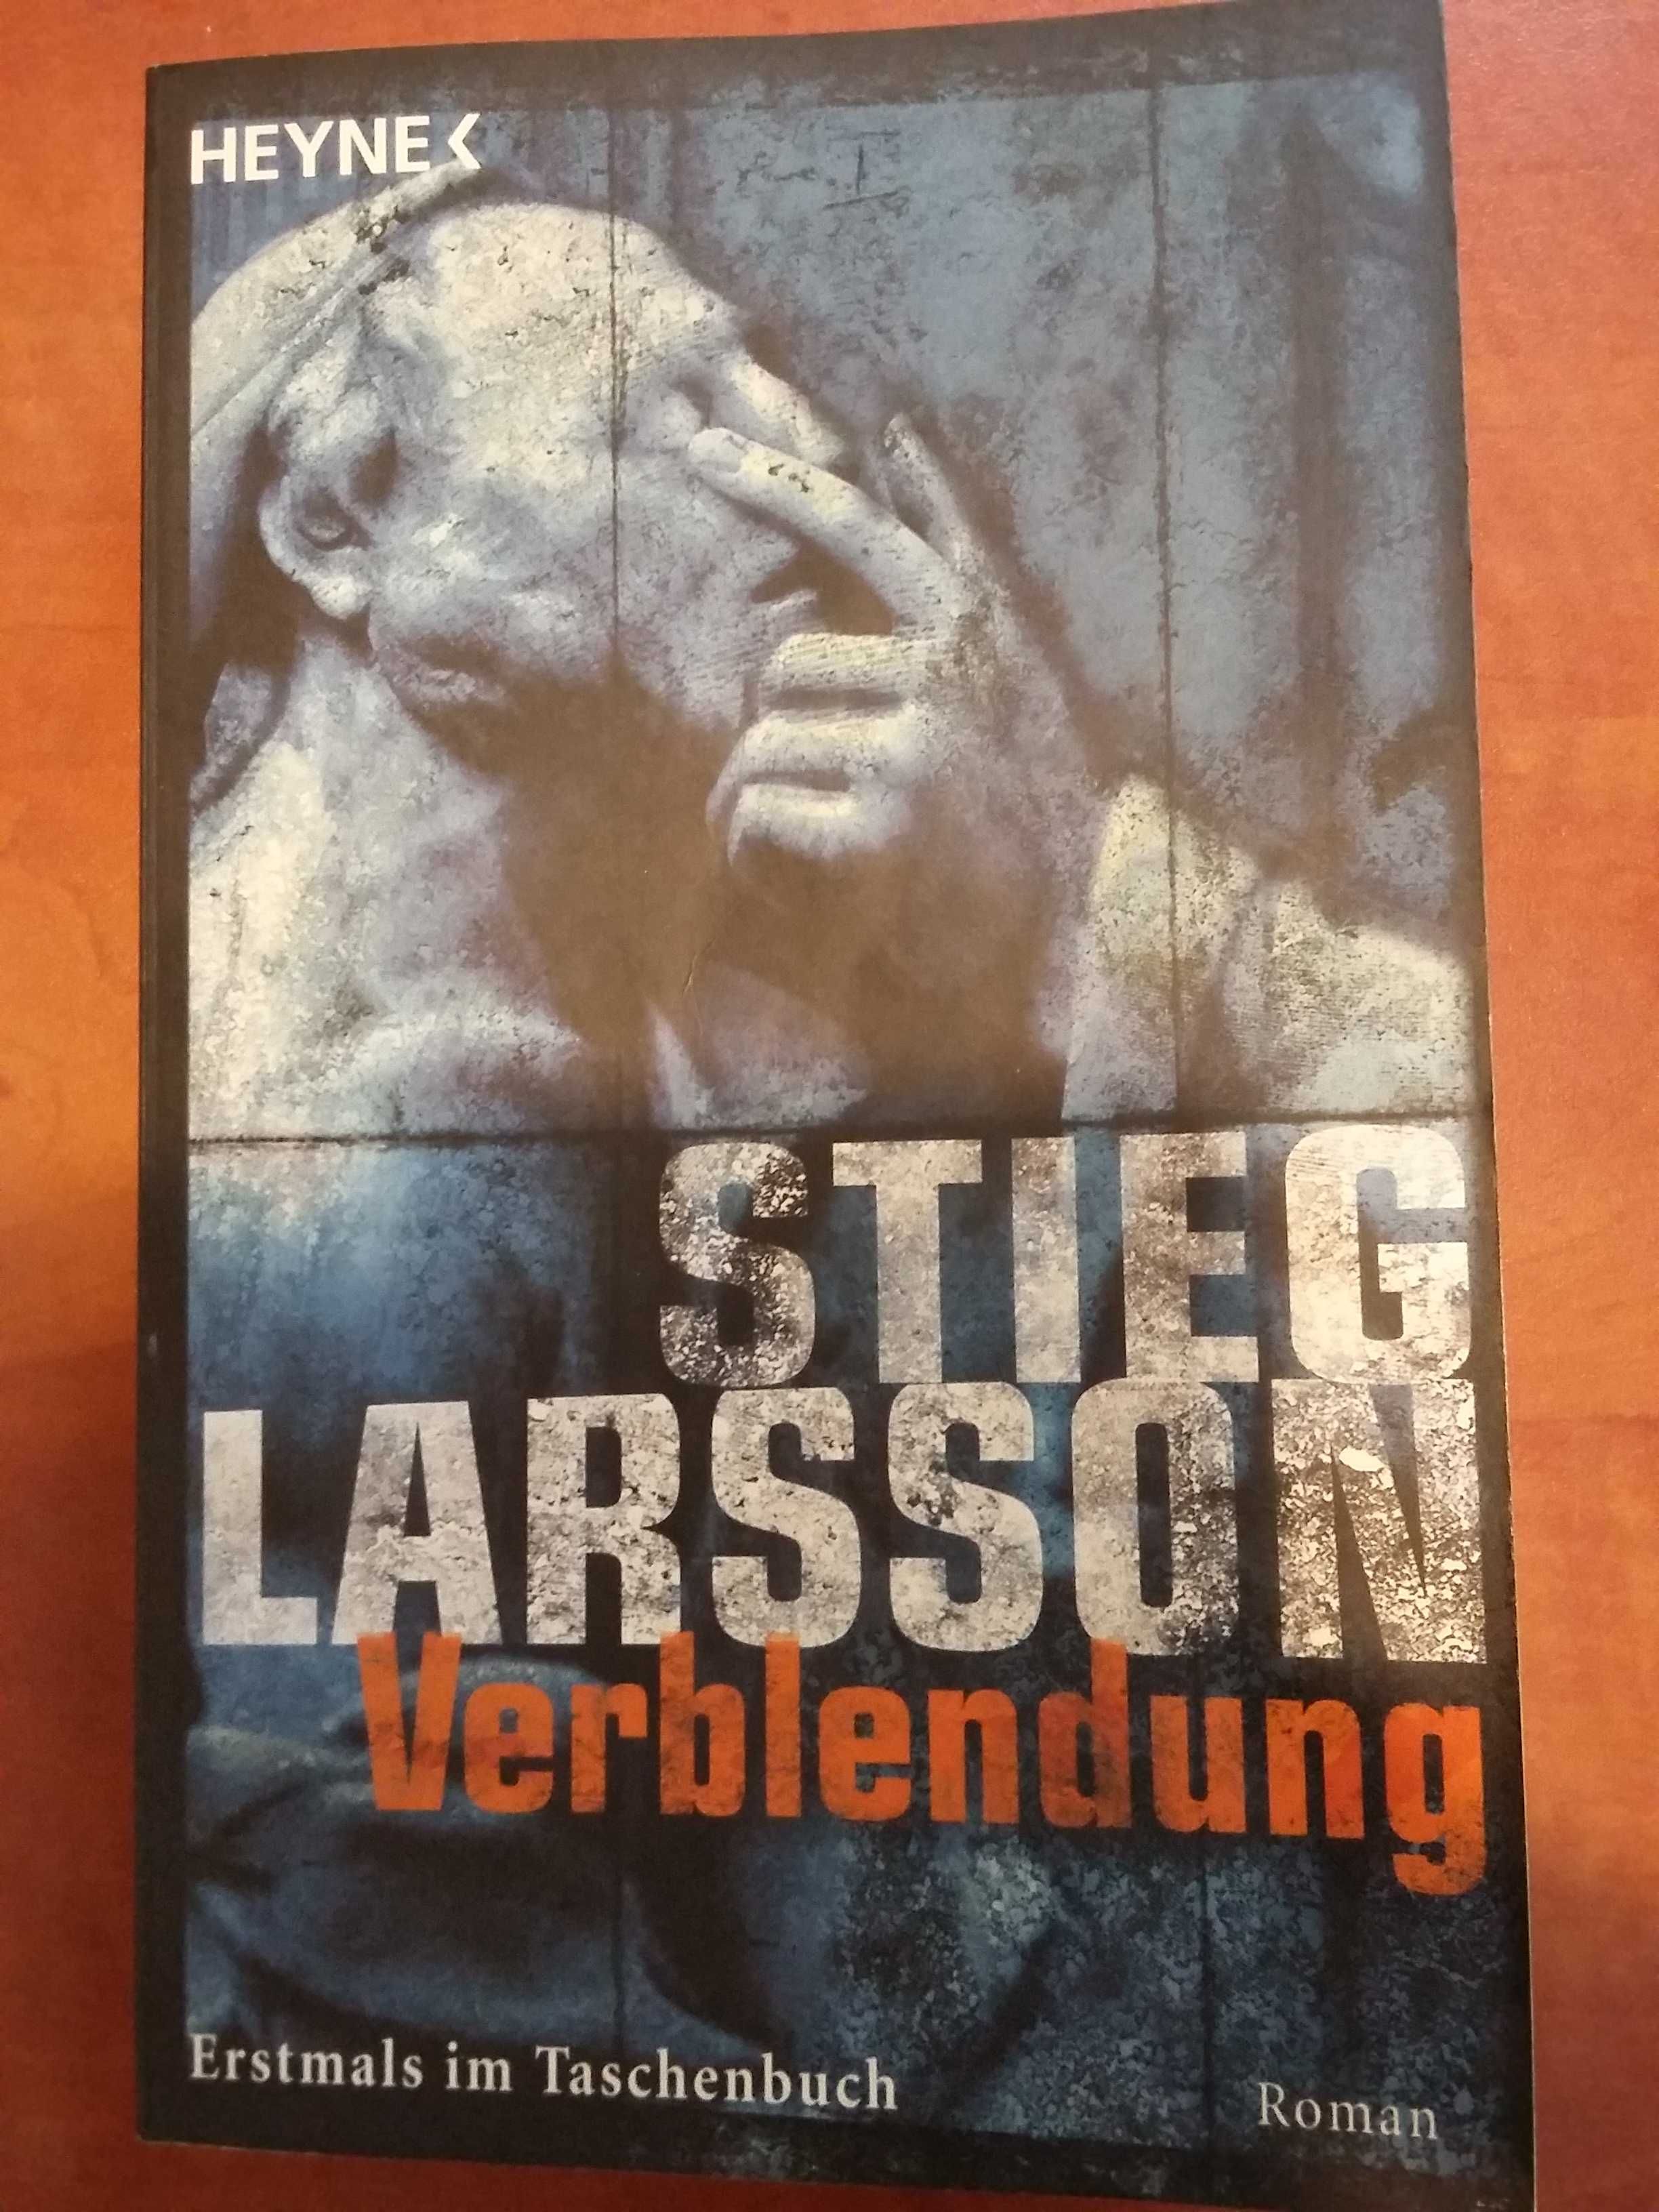 Stieg Larsson Verblendung, Verblendung, Vergebung